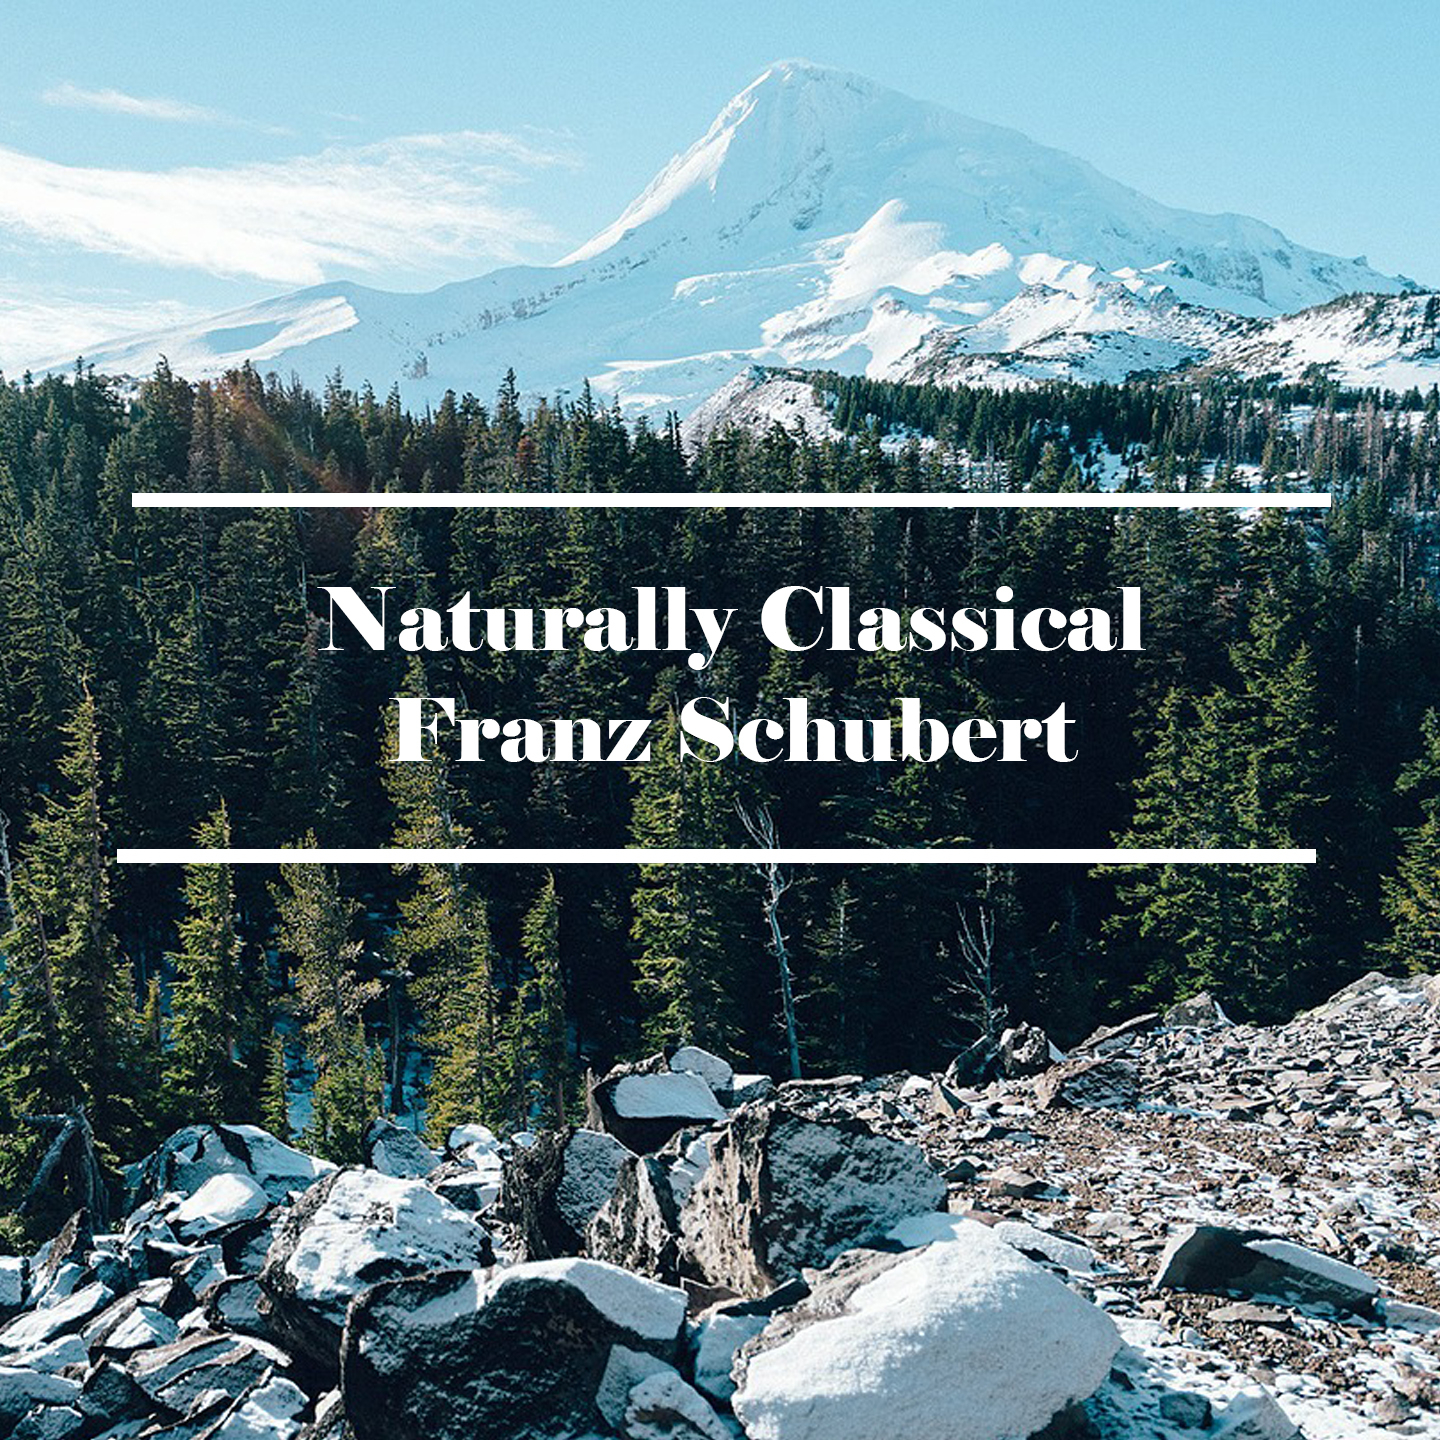 Naturally Classical Franz Schubert